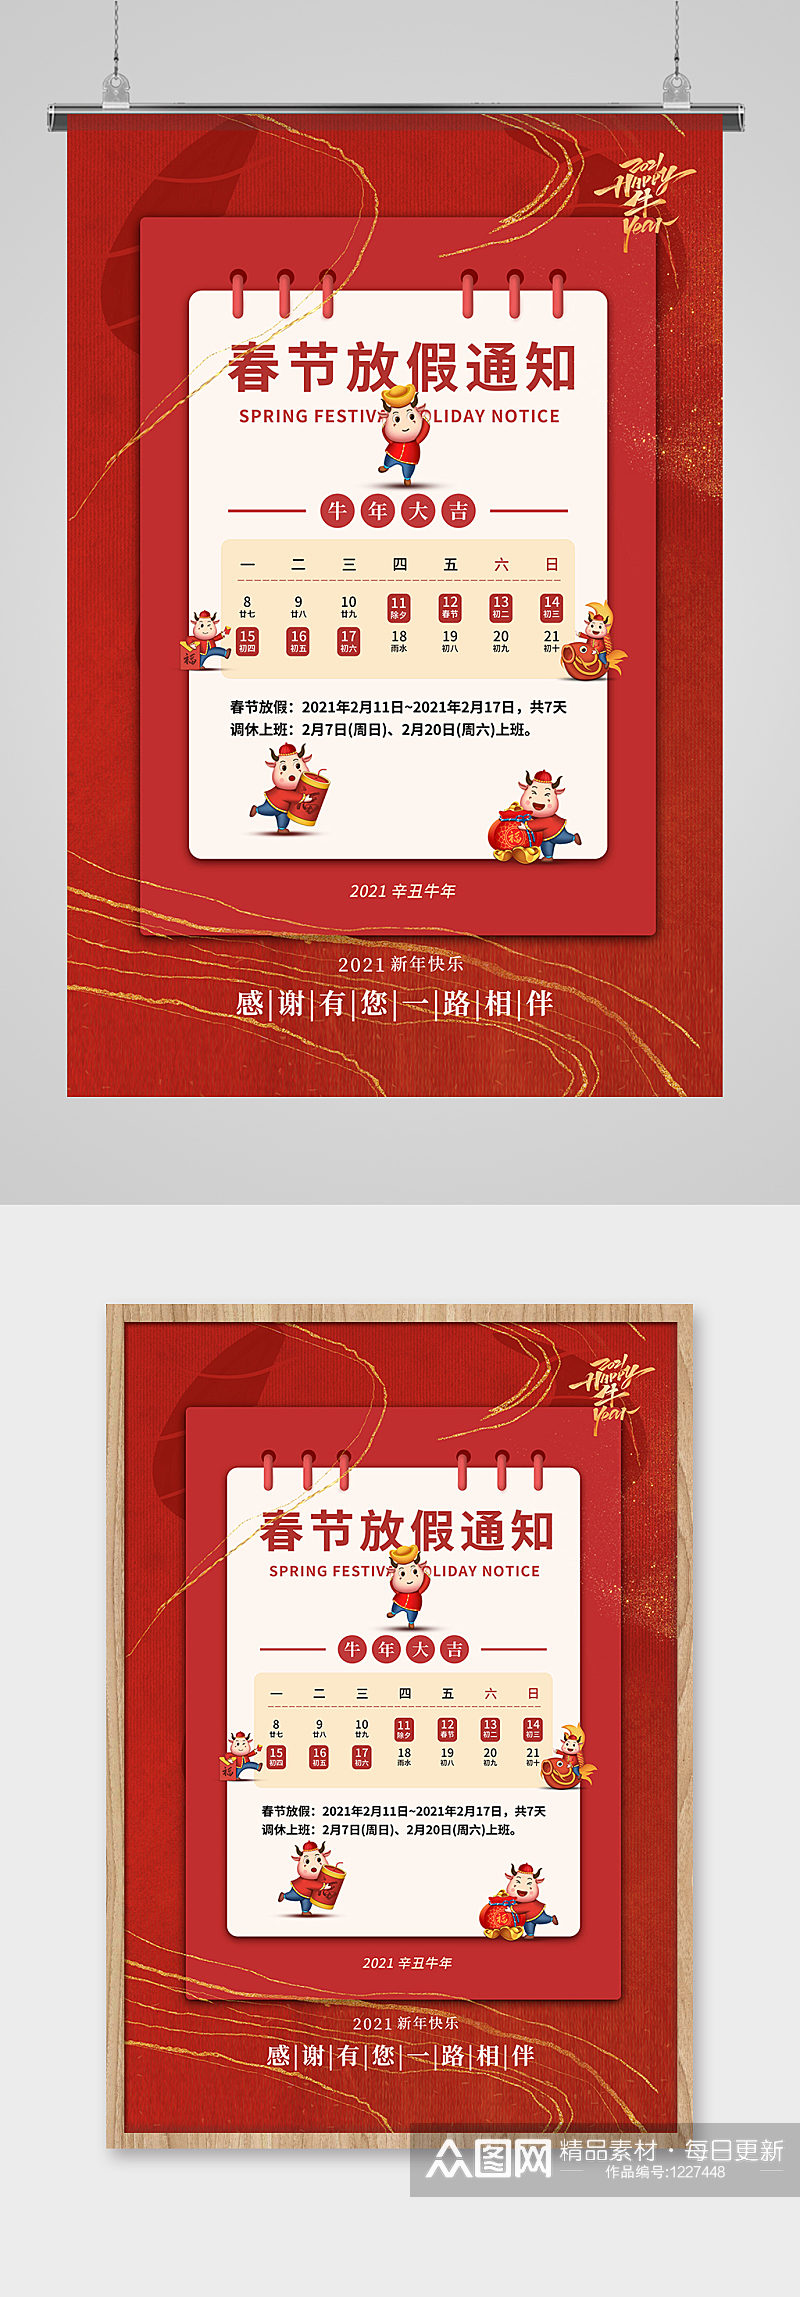 红色鎏金牛年春节放假通知海报设计素材